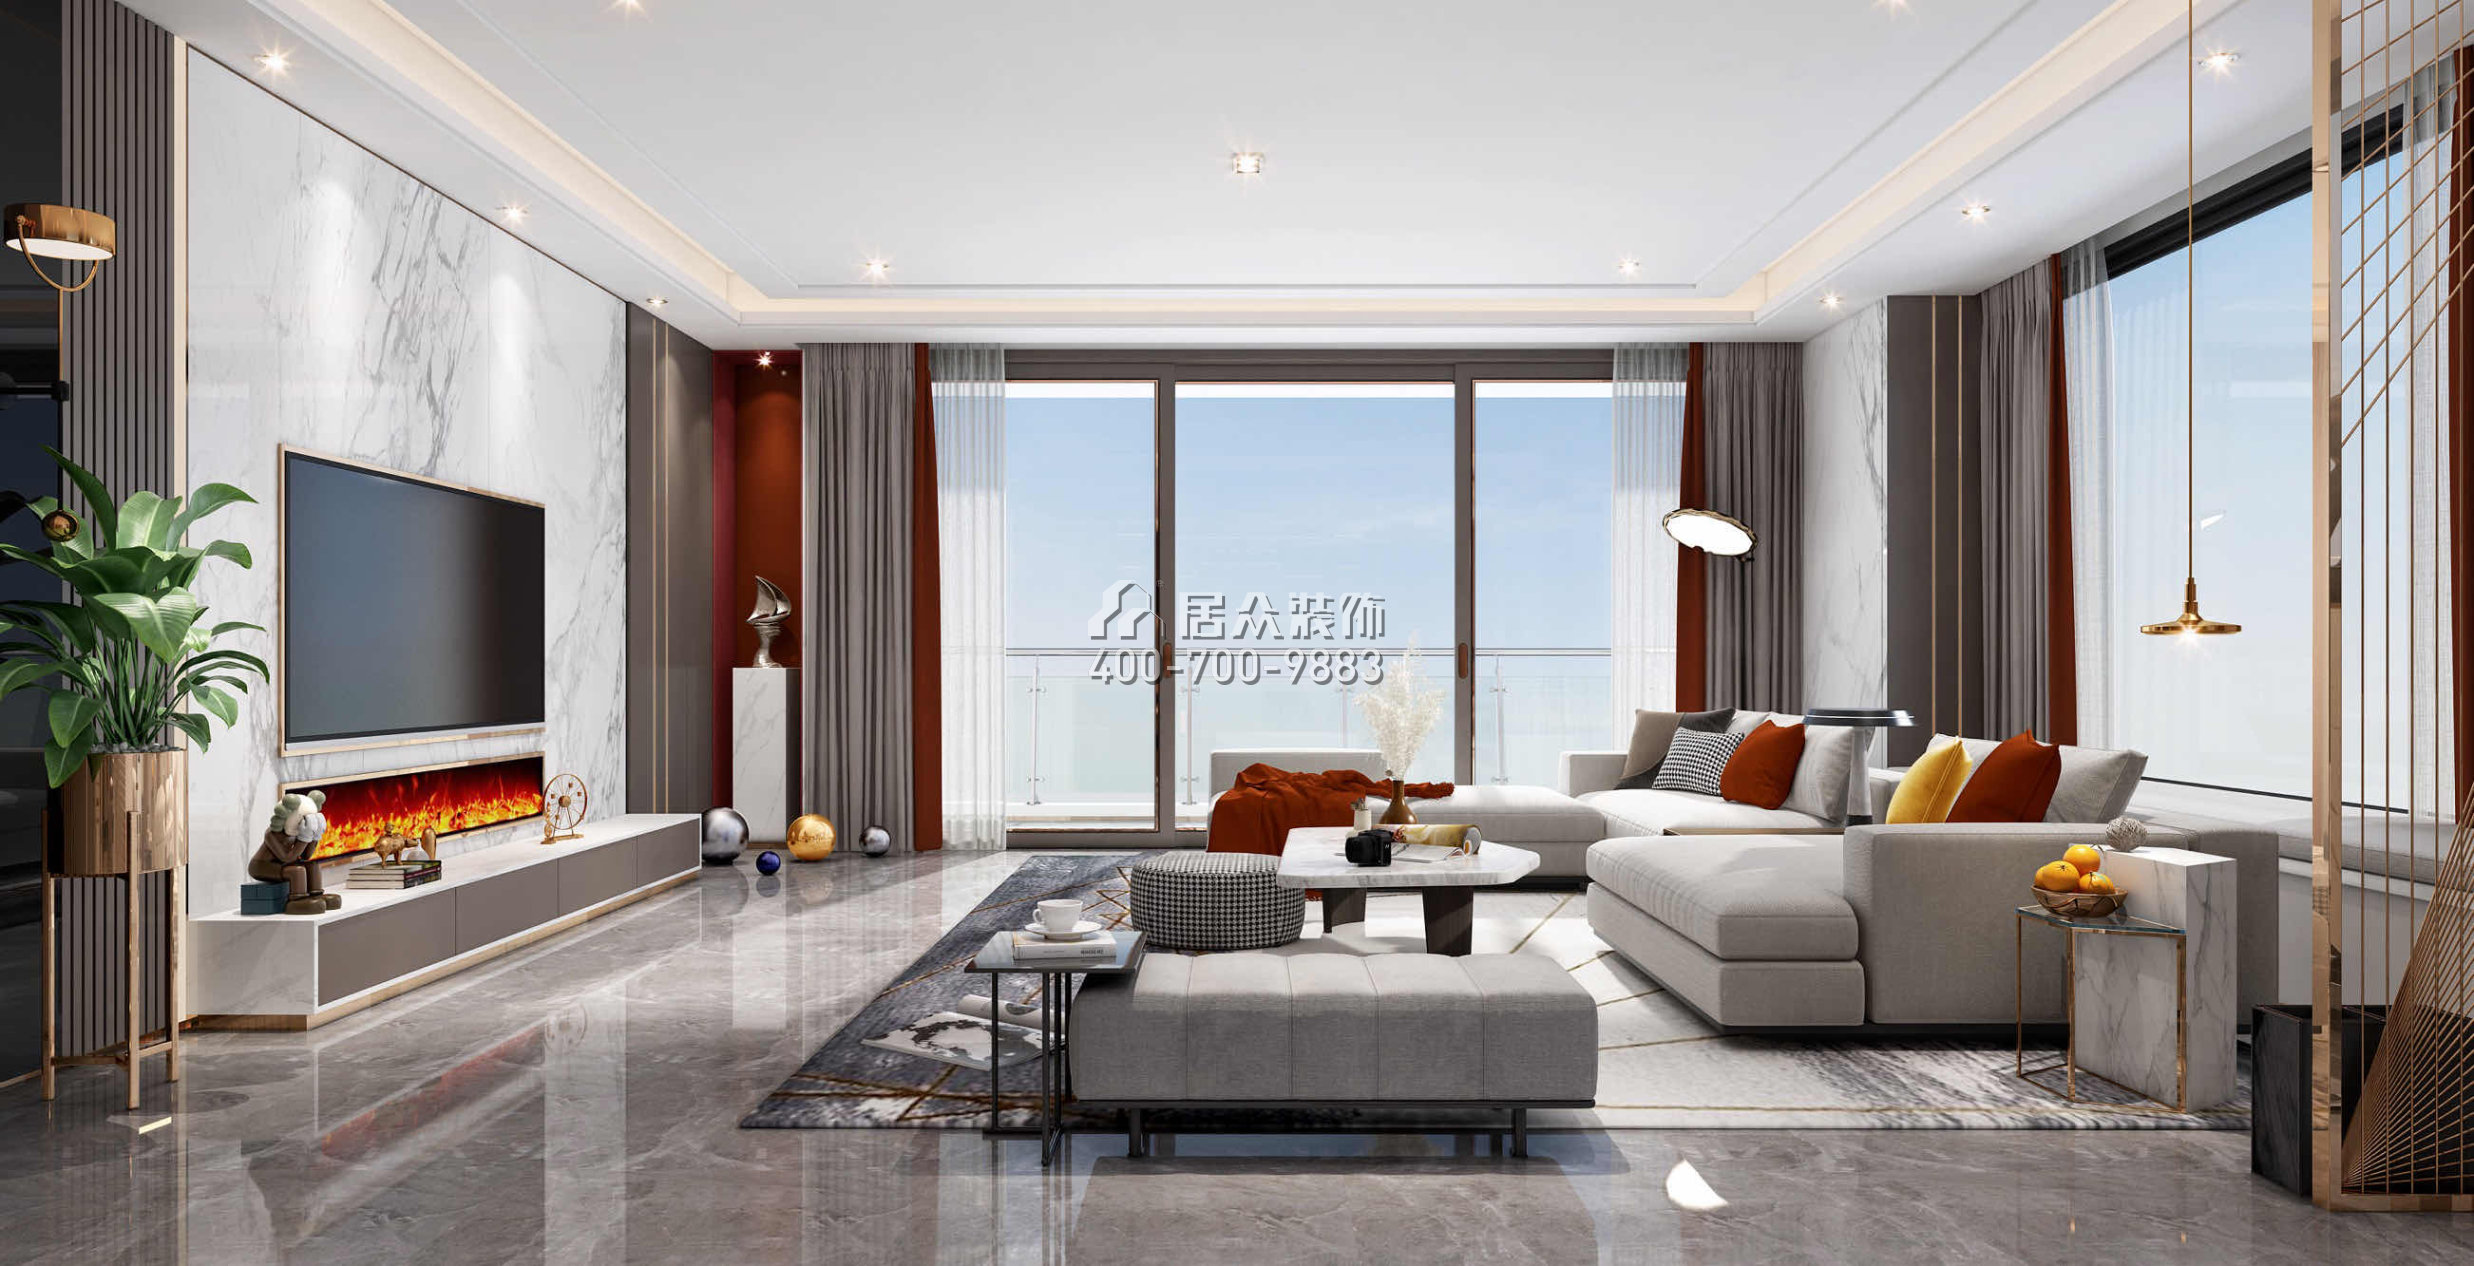 天鹅堡370平方米现代简约风格平层户型客厅装修效果图